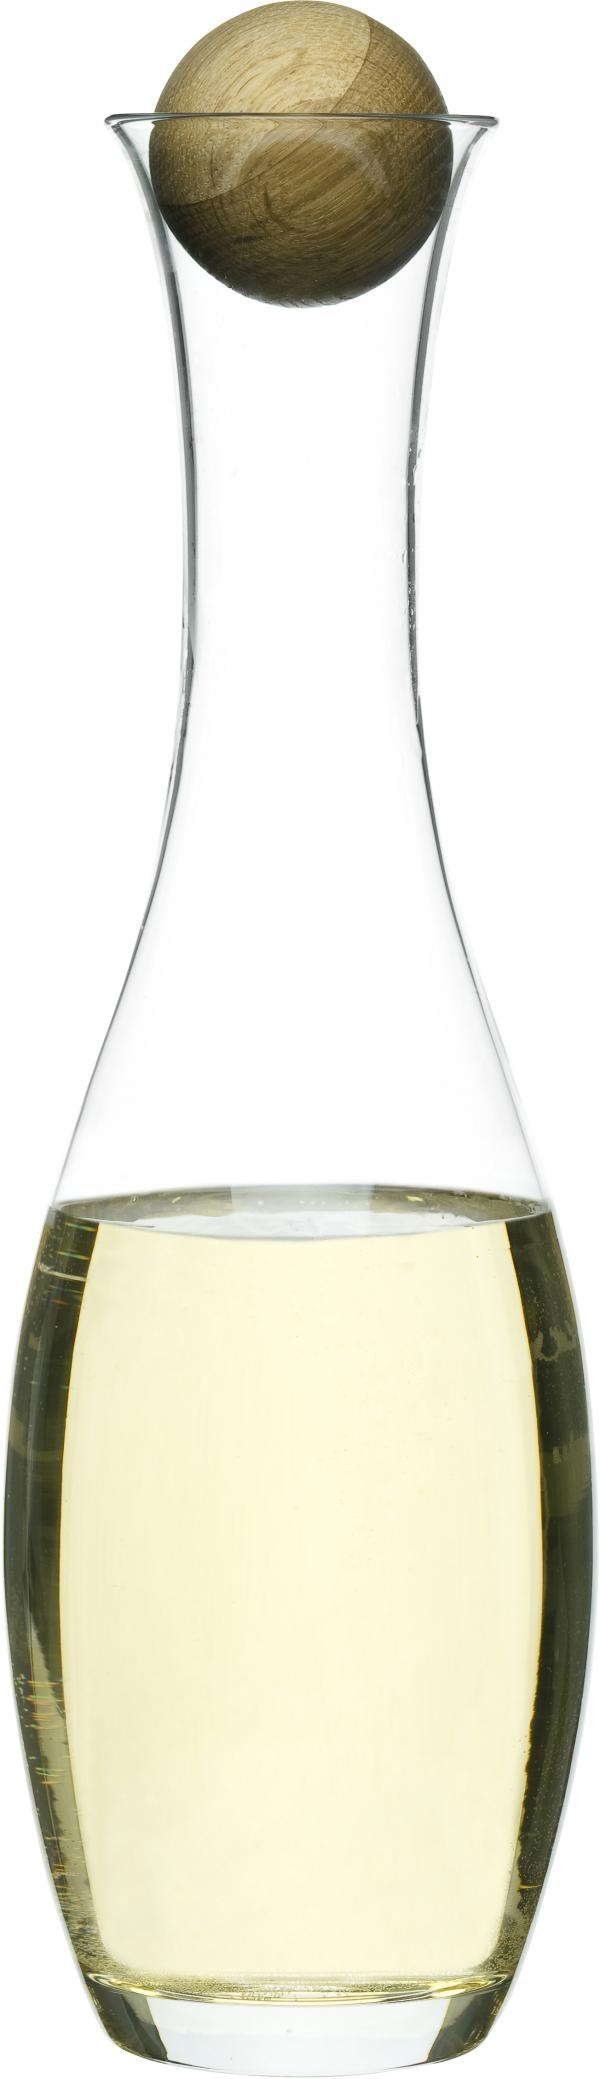 Karafa s dřevěnou kuličkou SAGAFORM Oval Oak, bílé víno, 1L